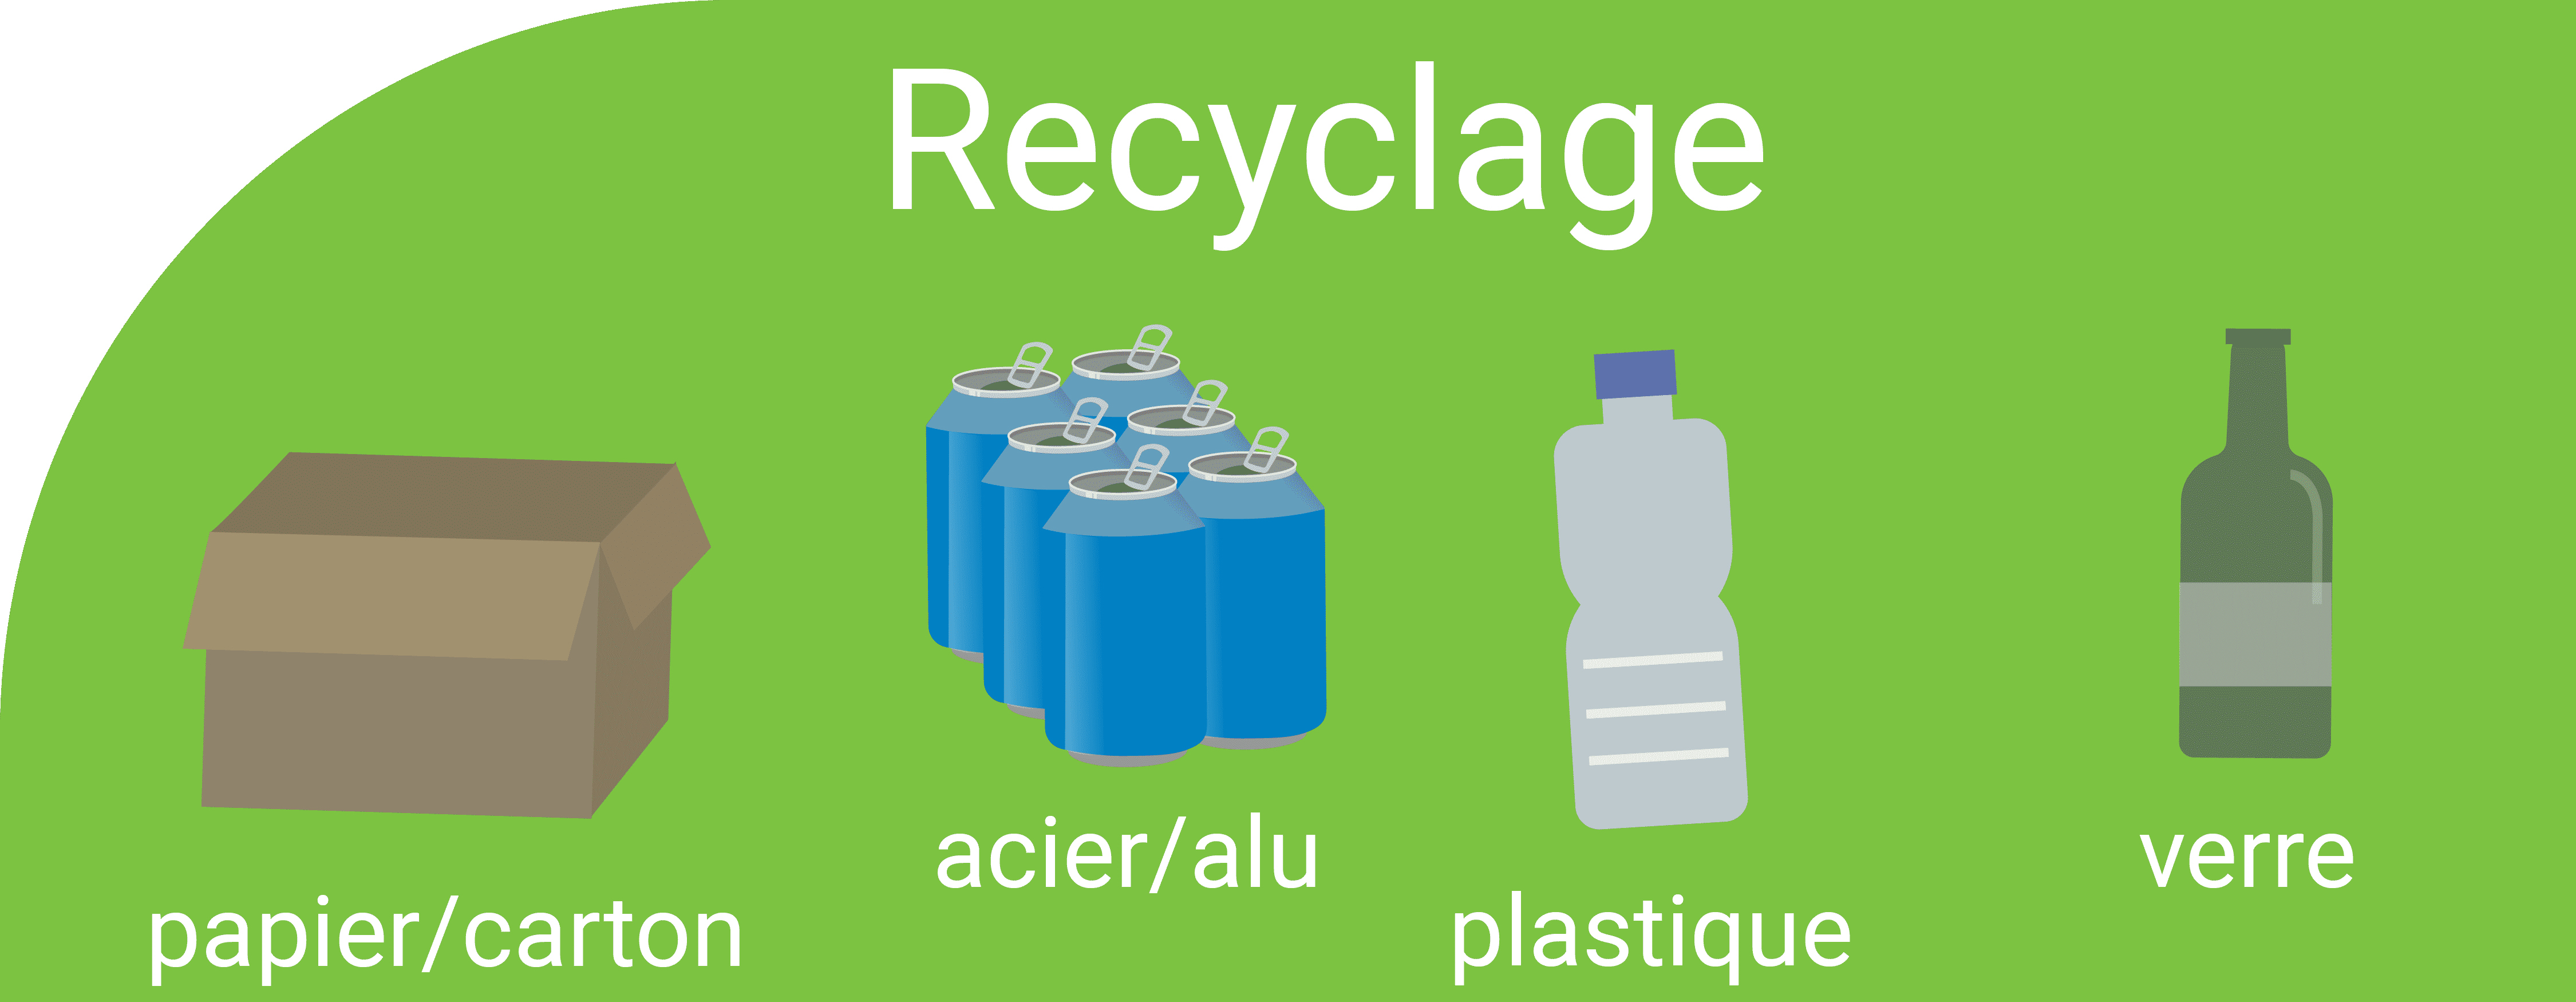 Déchets recyclables : papier, carton, acier, alu, verre et plastique